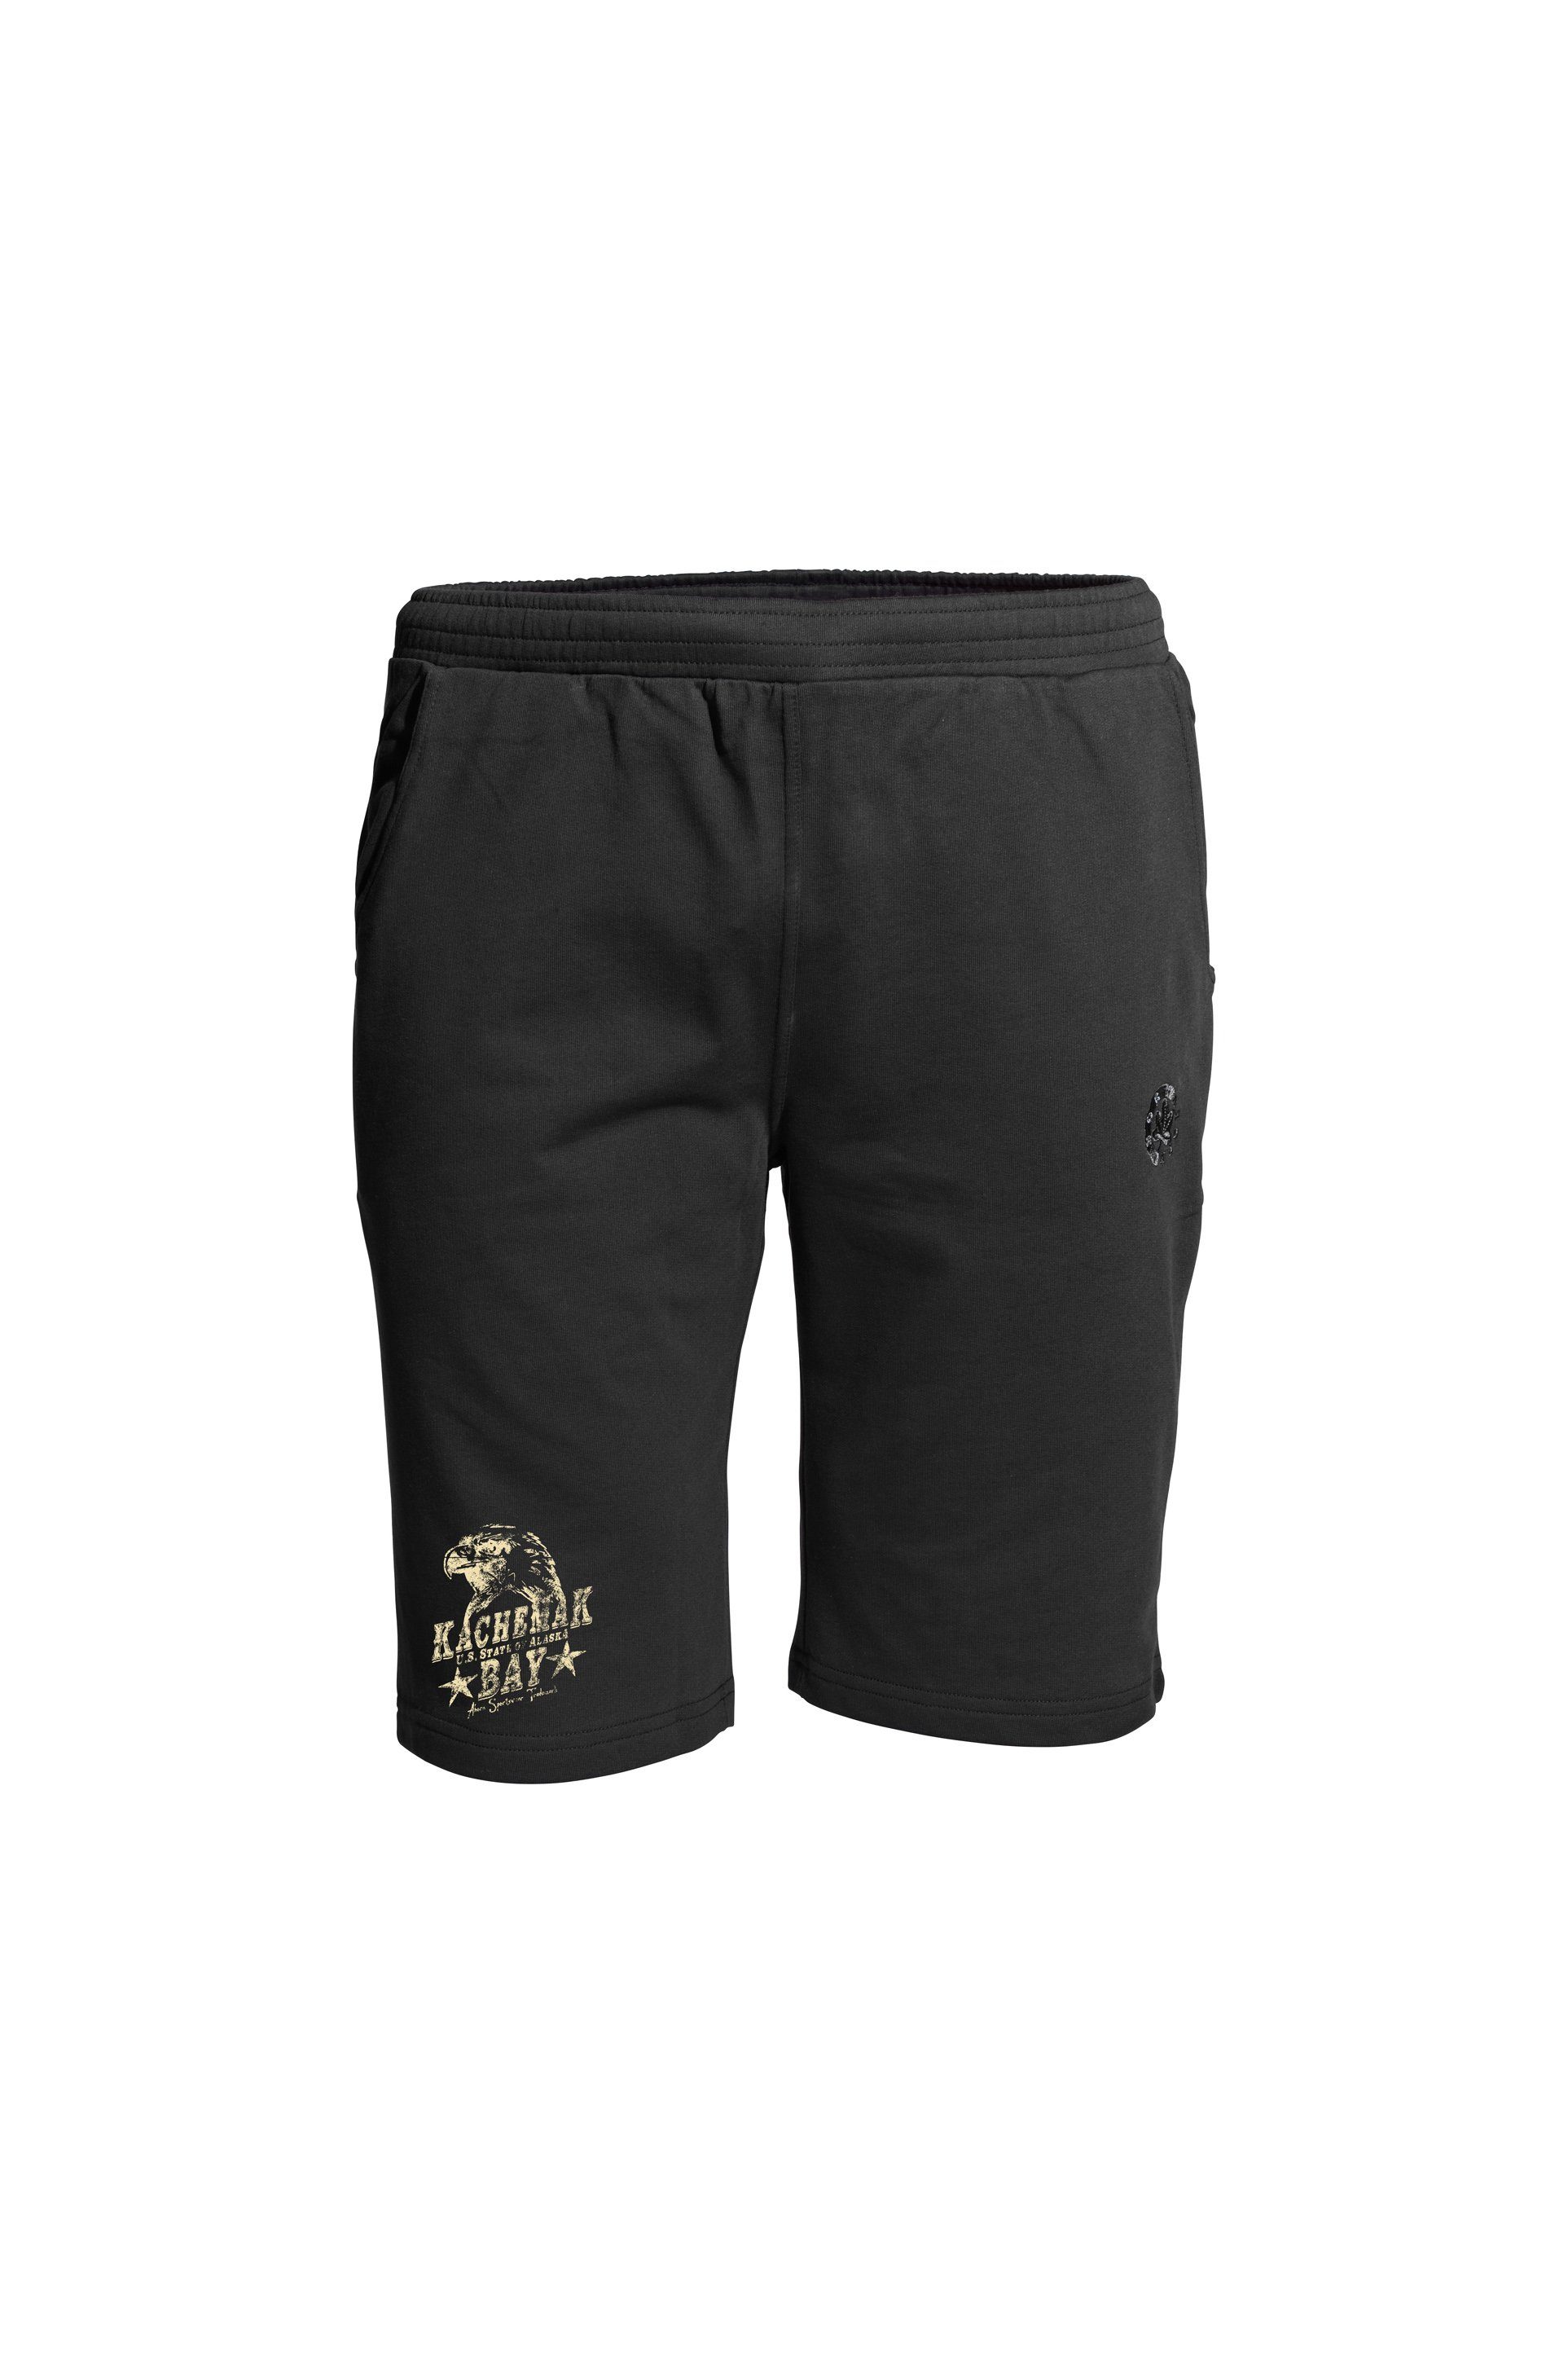 AHORN SPORTSWEAR Shorts EAGLE mit modischem Print schwarz